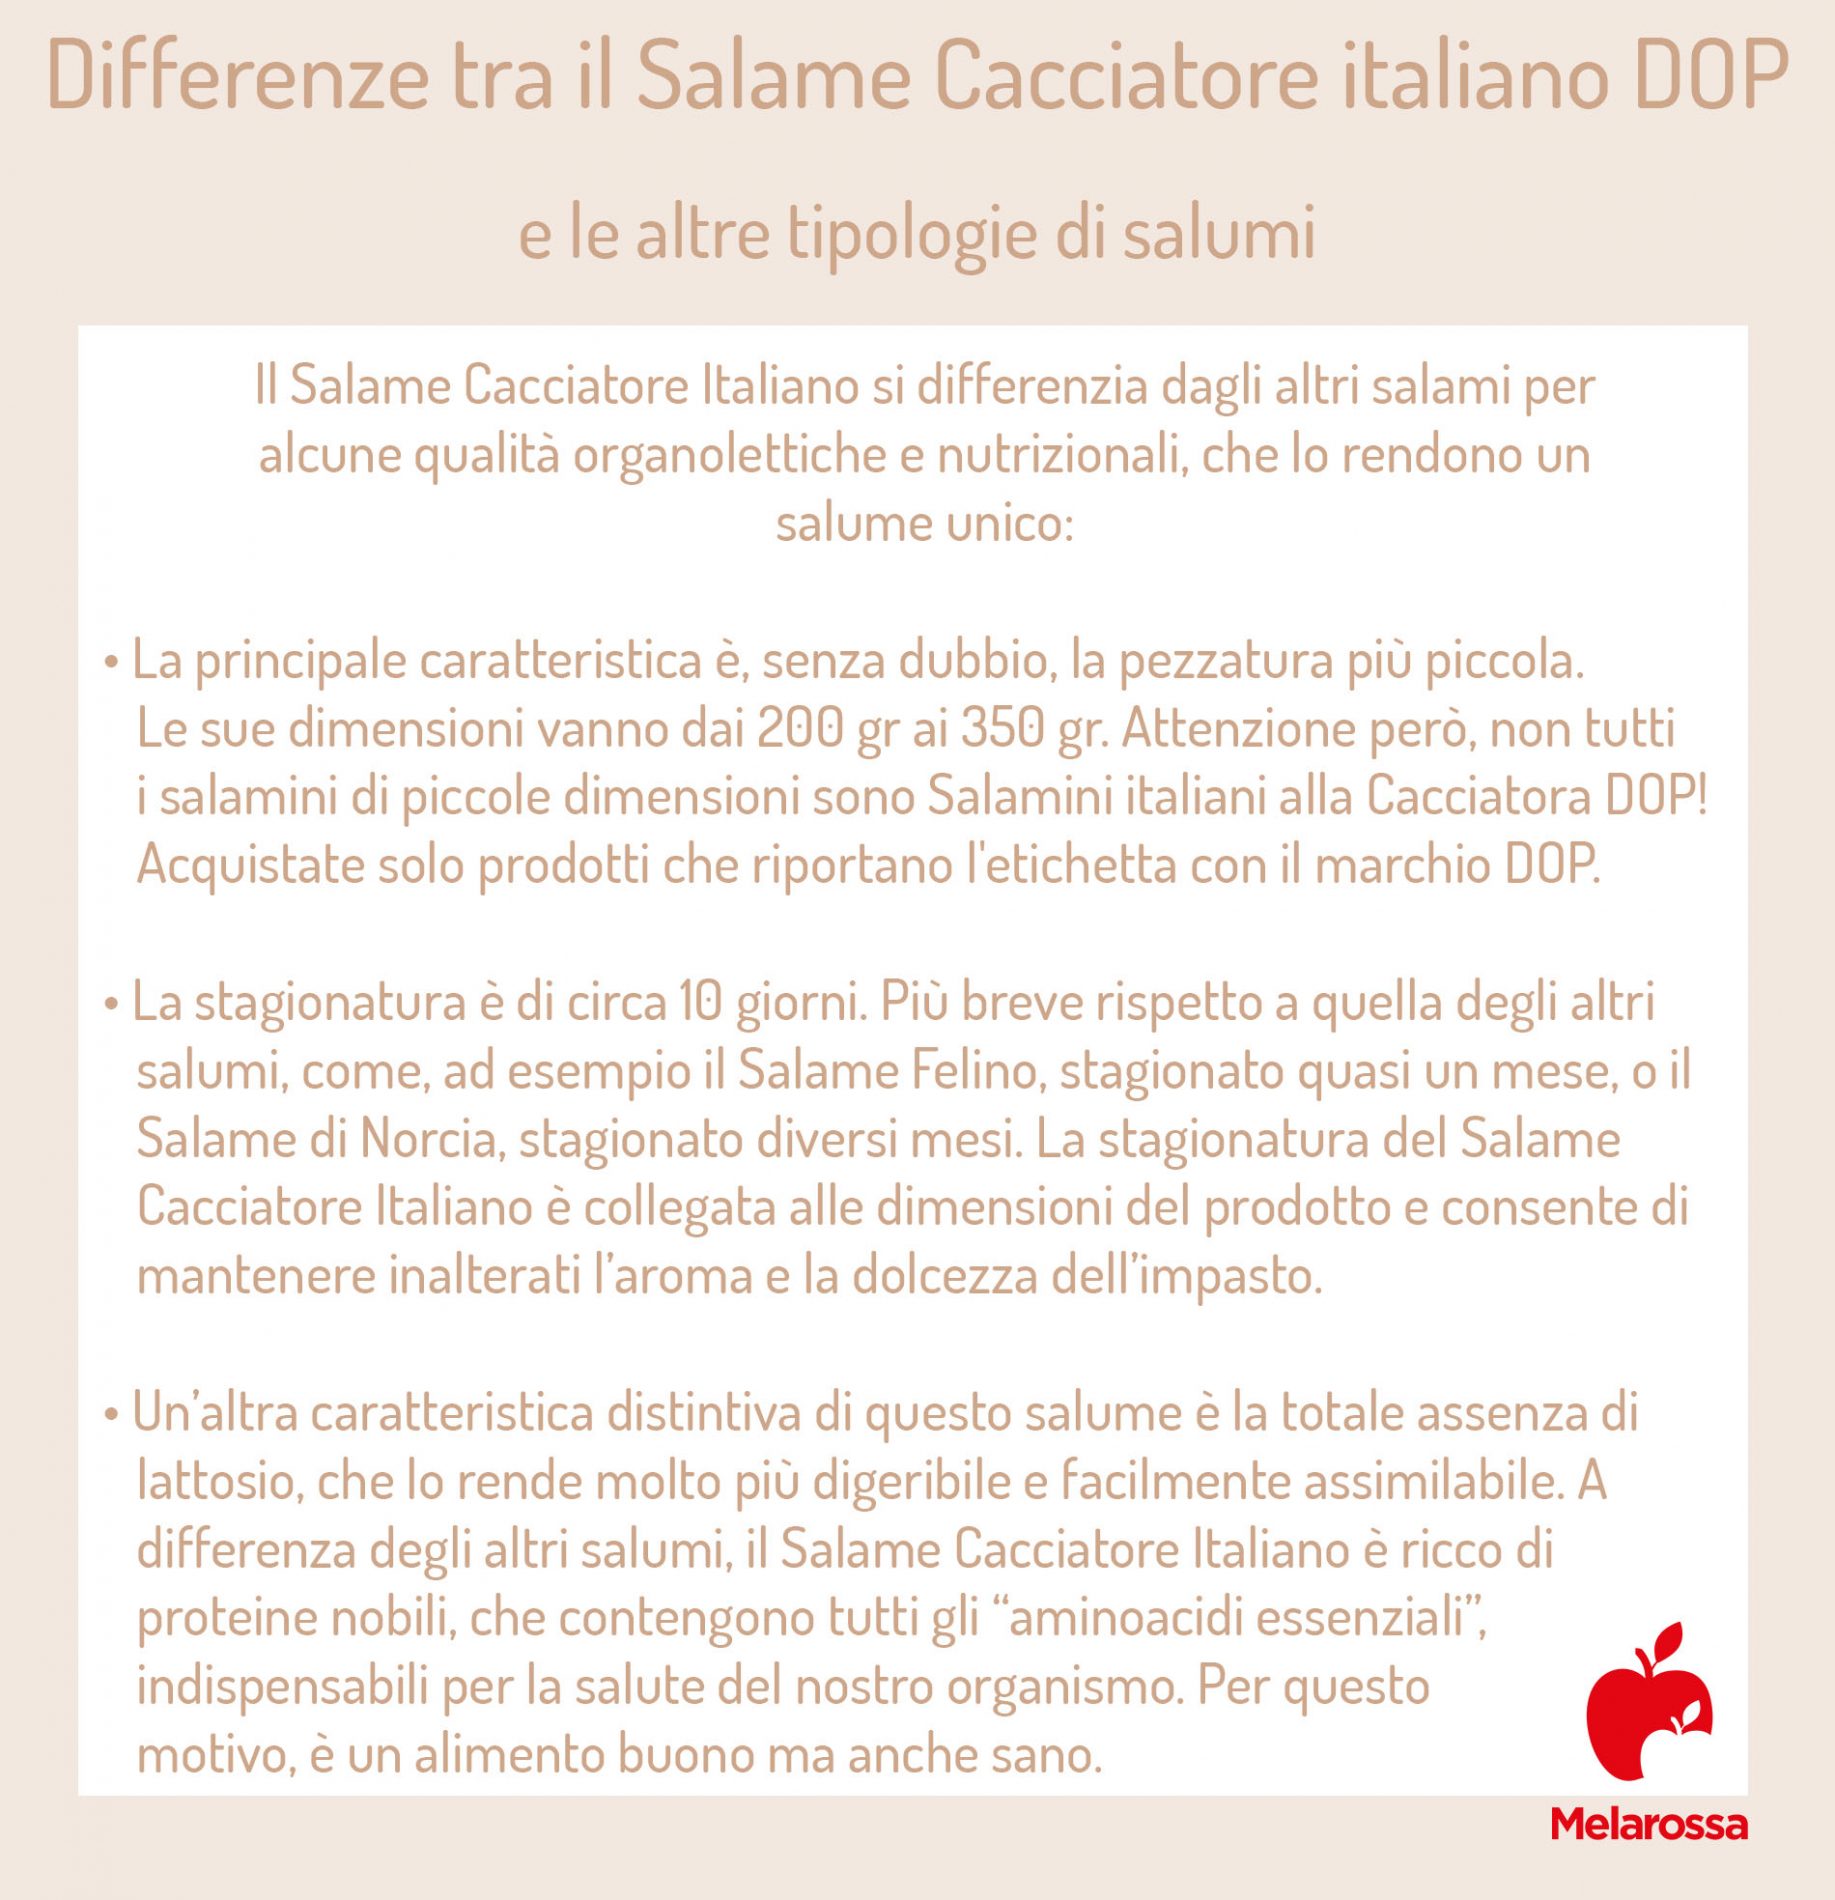 salame cacciatore Italiano: differenze